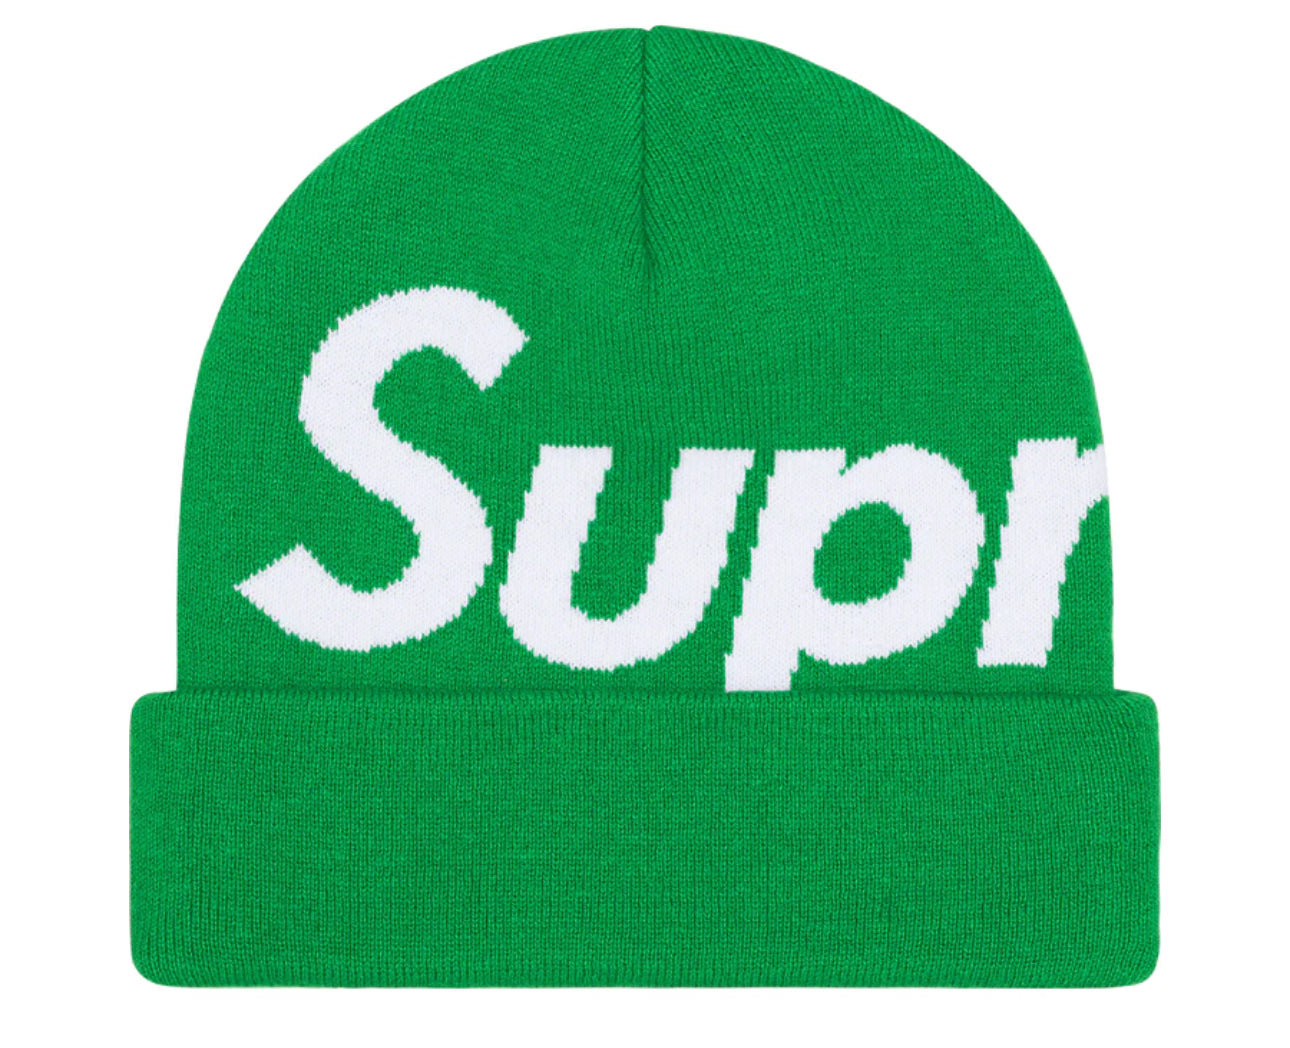 Supreme Big Logo Beanie
Green